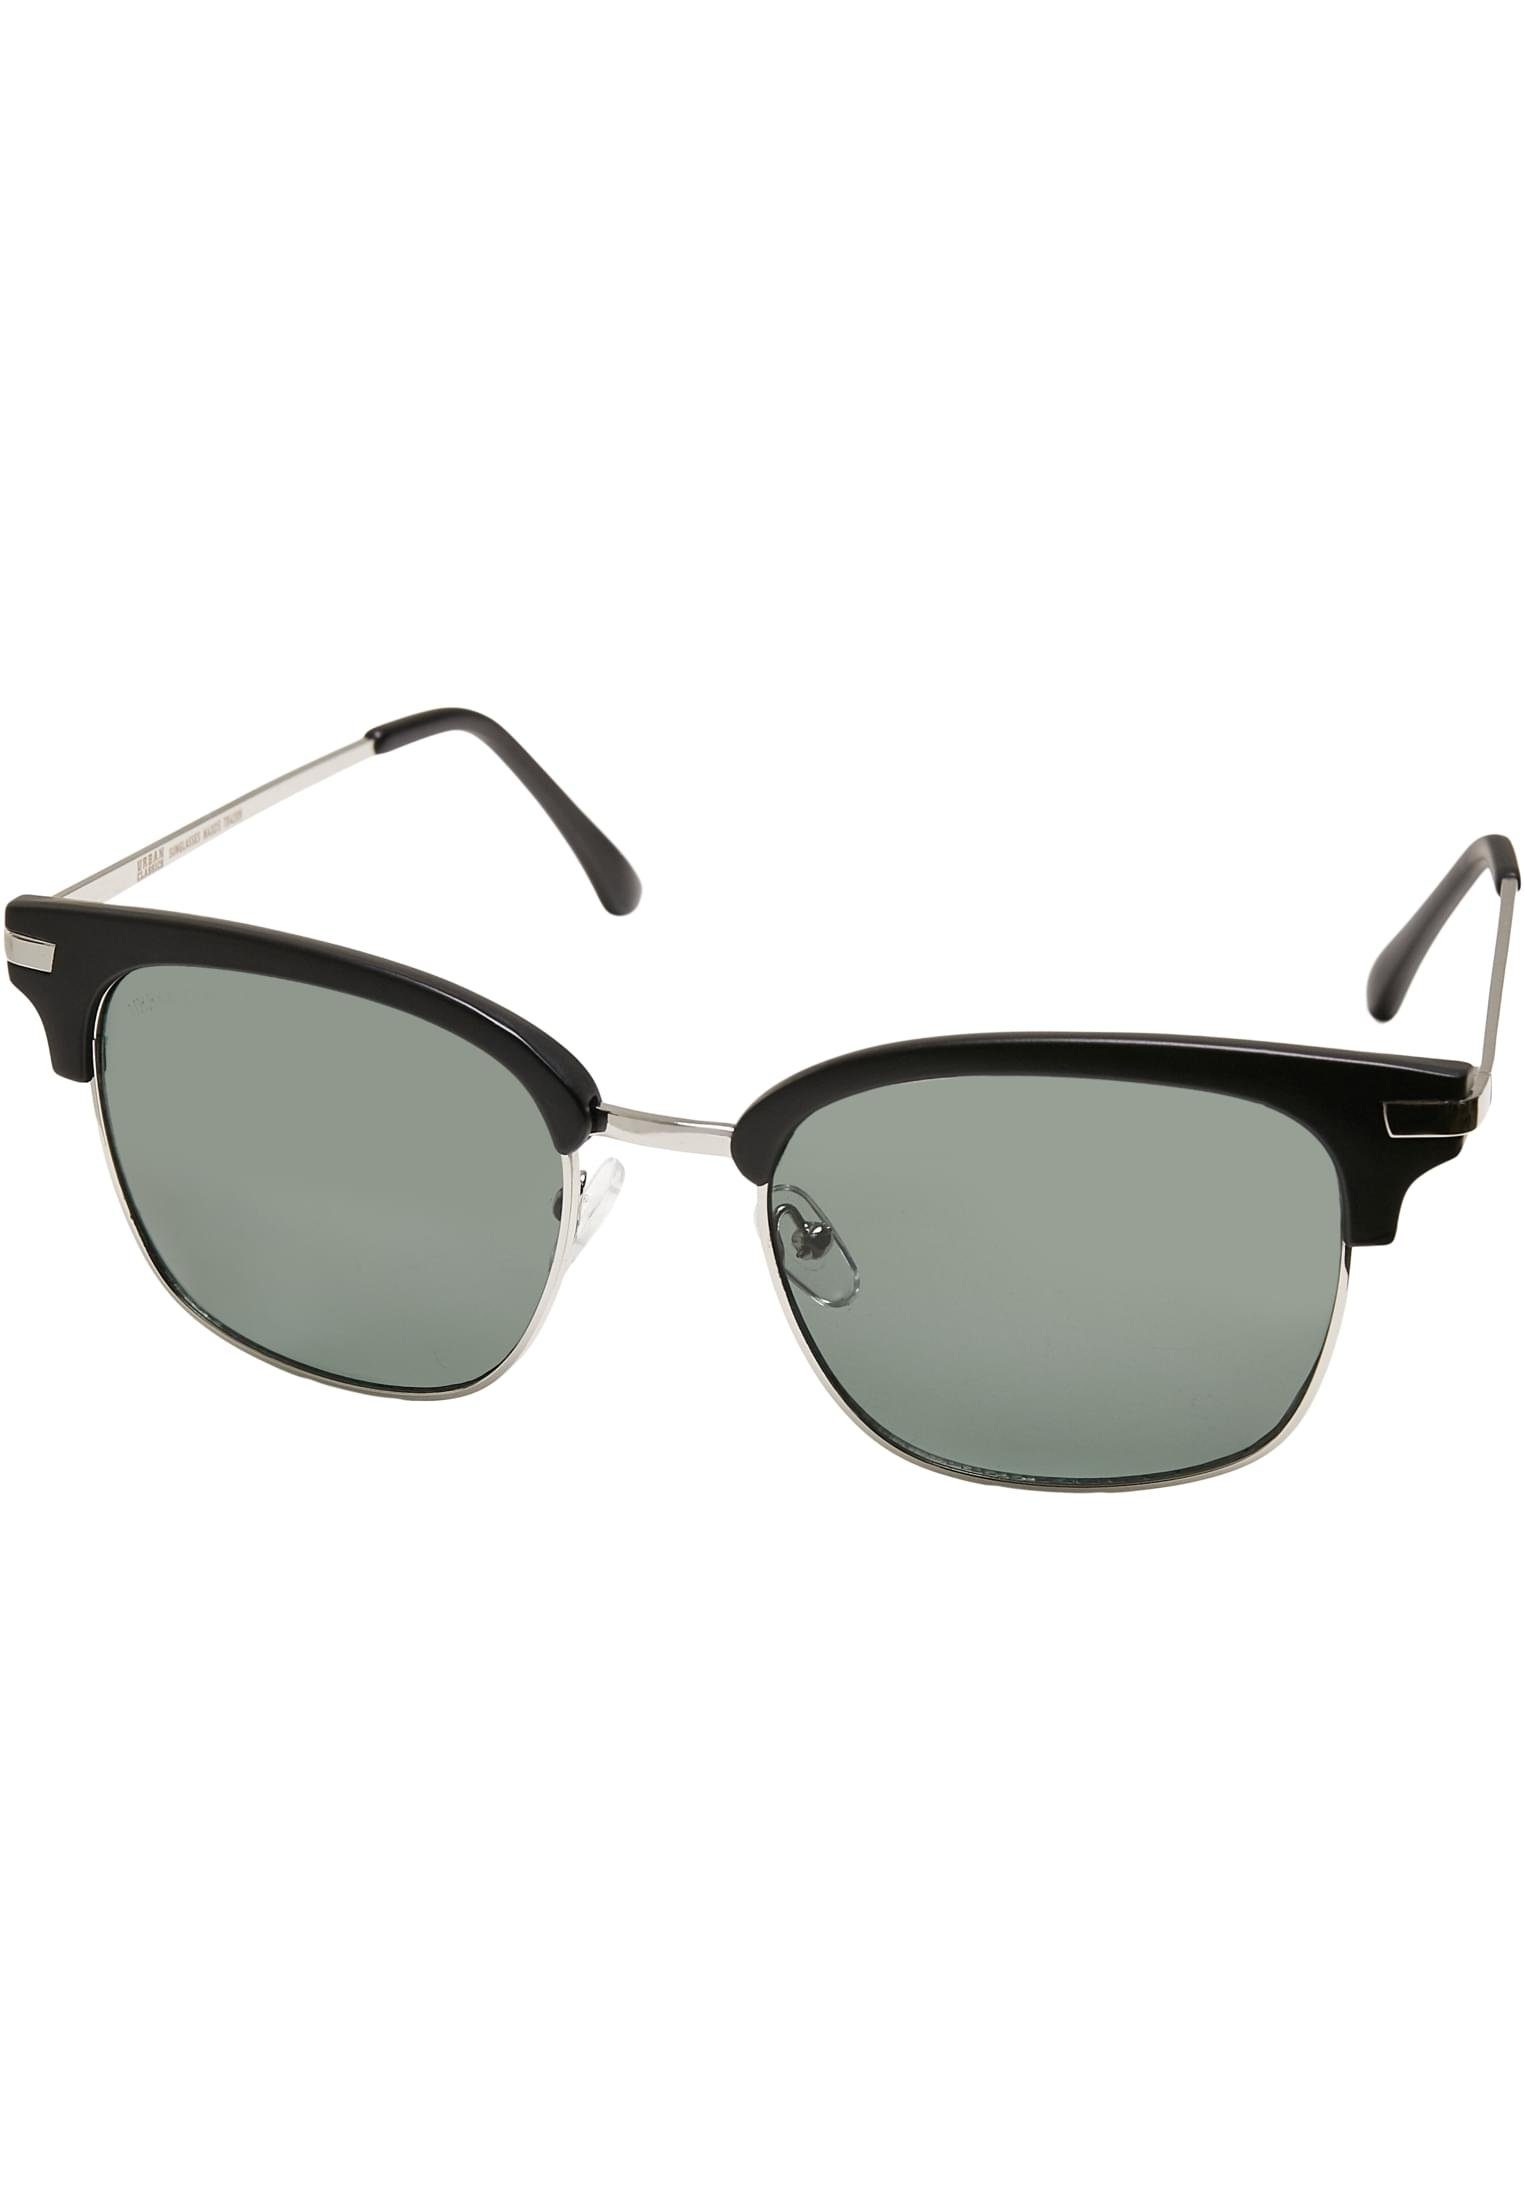 Sonnenbrille Unisex Crete URBAN Sunglasses CLASSICS